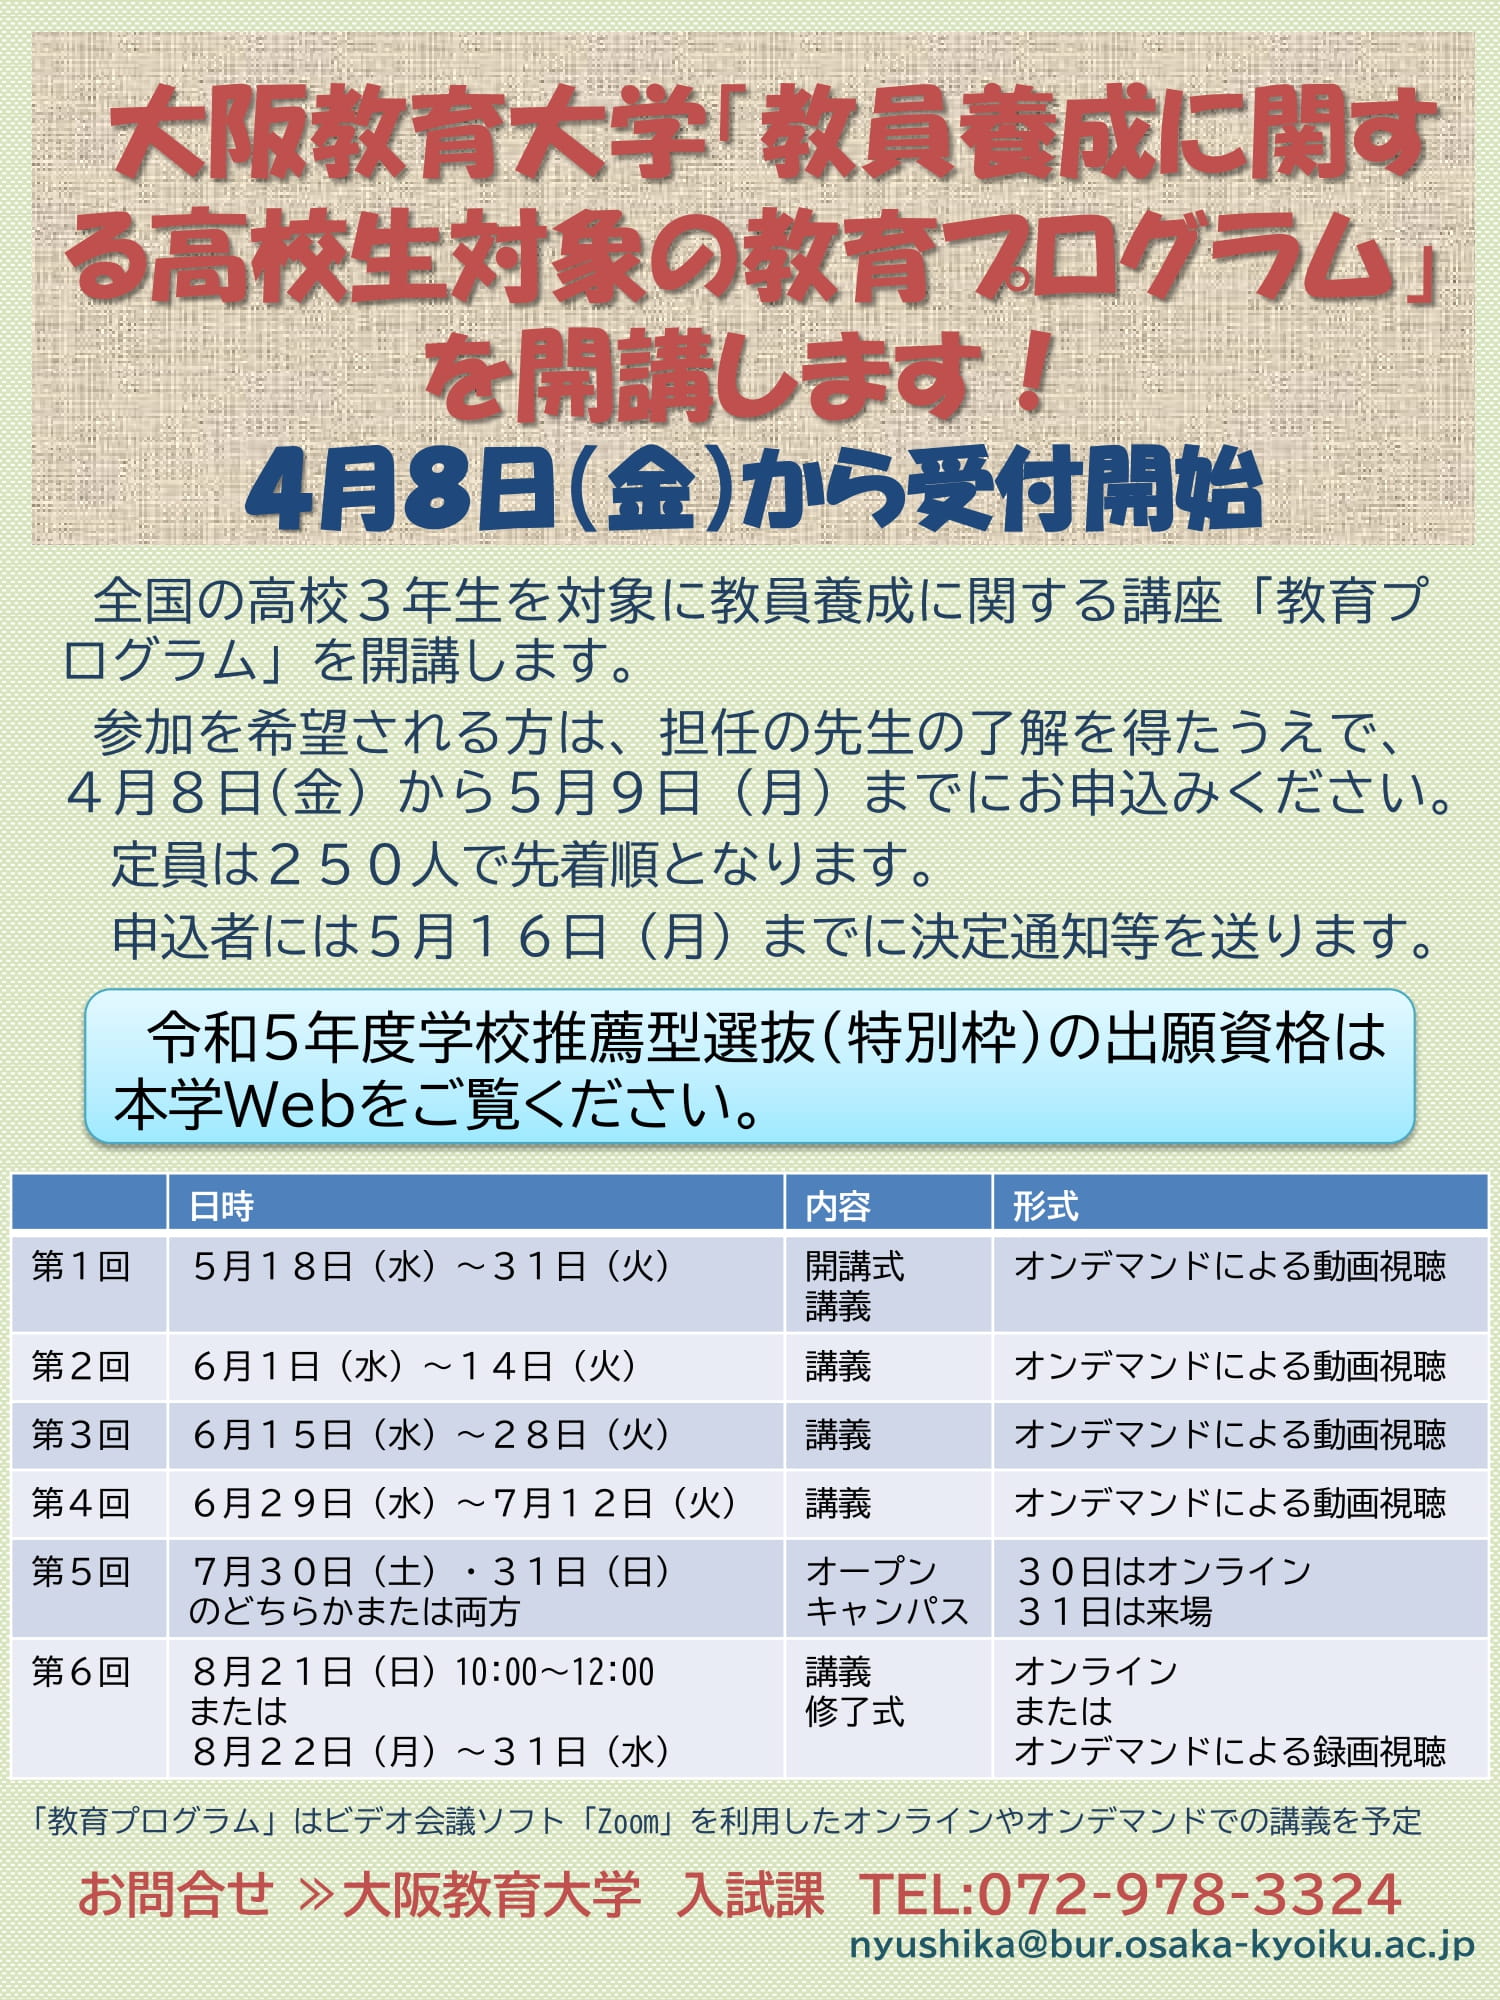 大阪 教育 大学 合格 発表